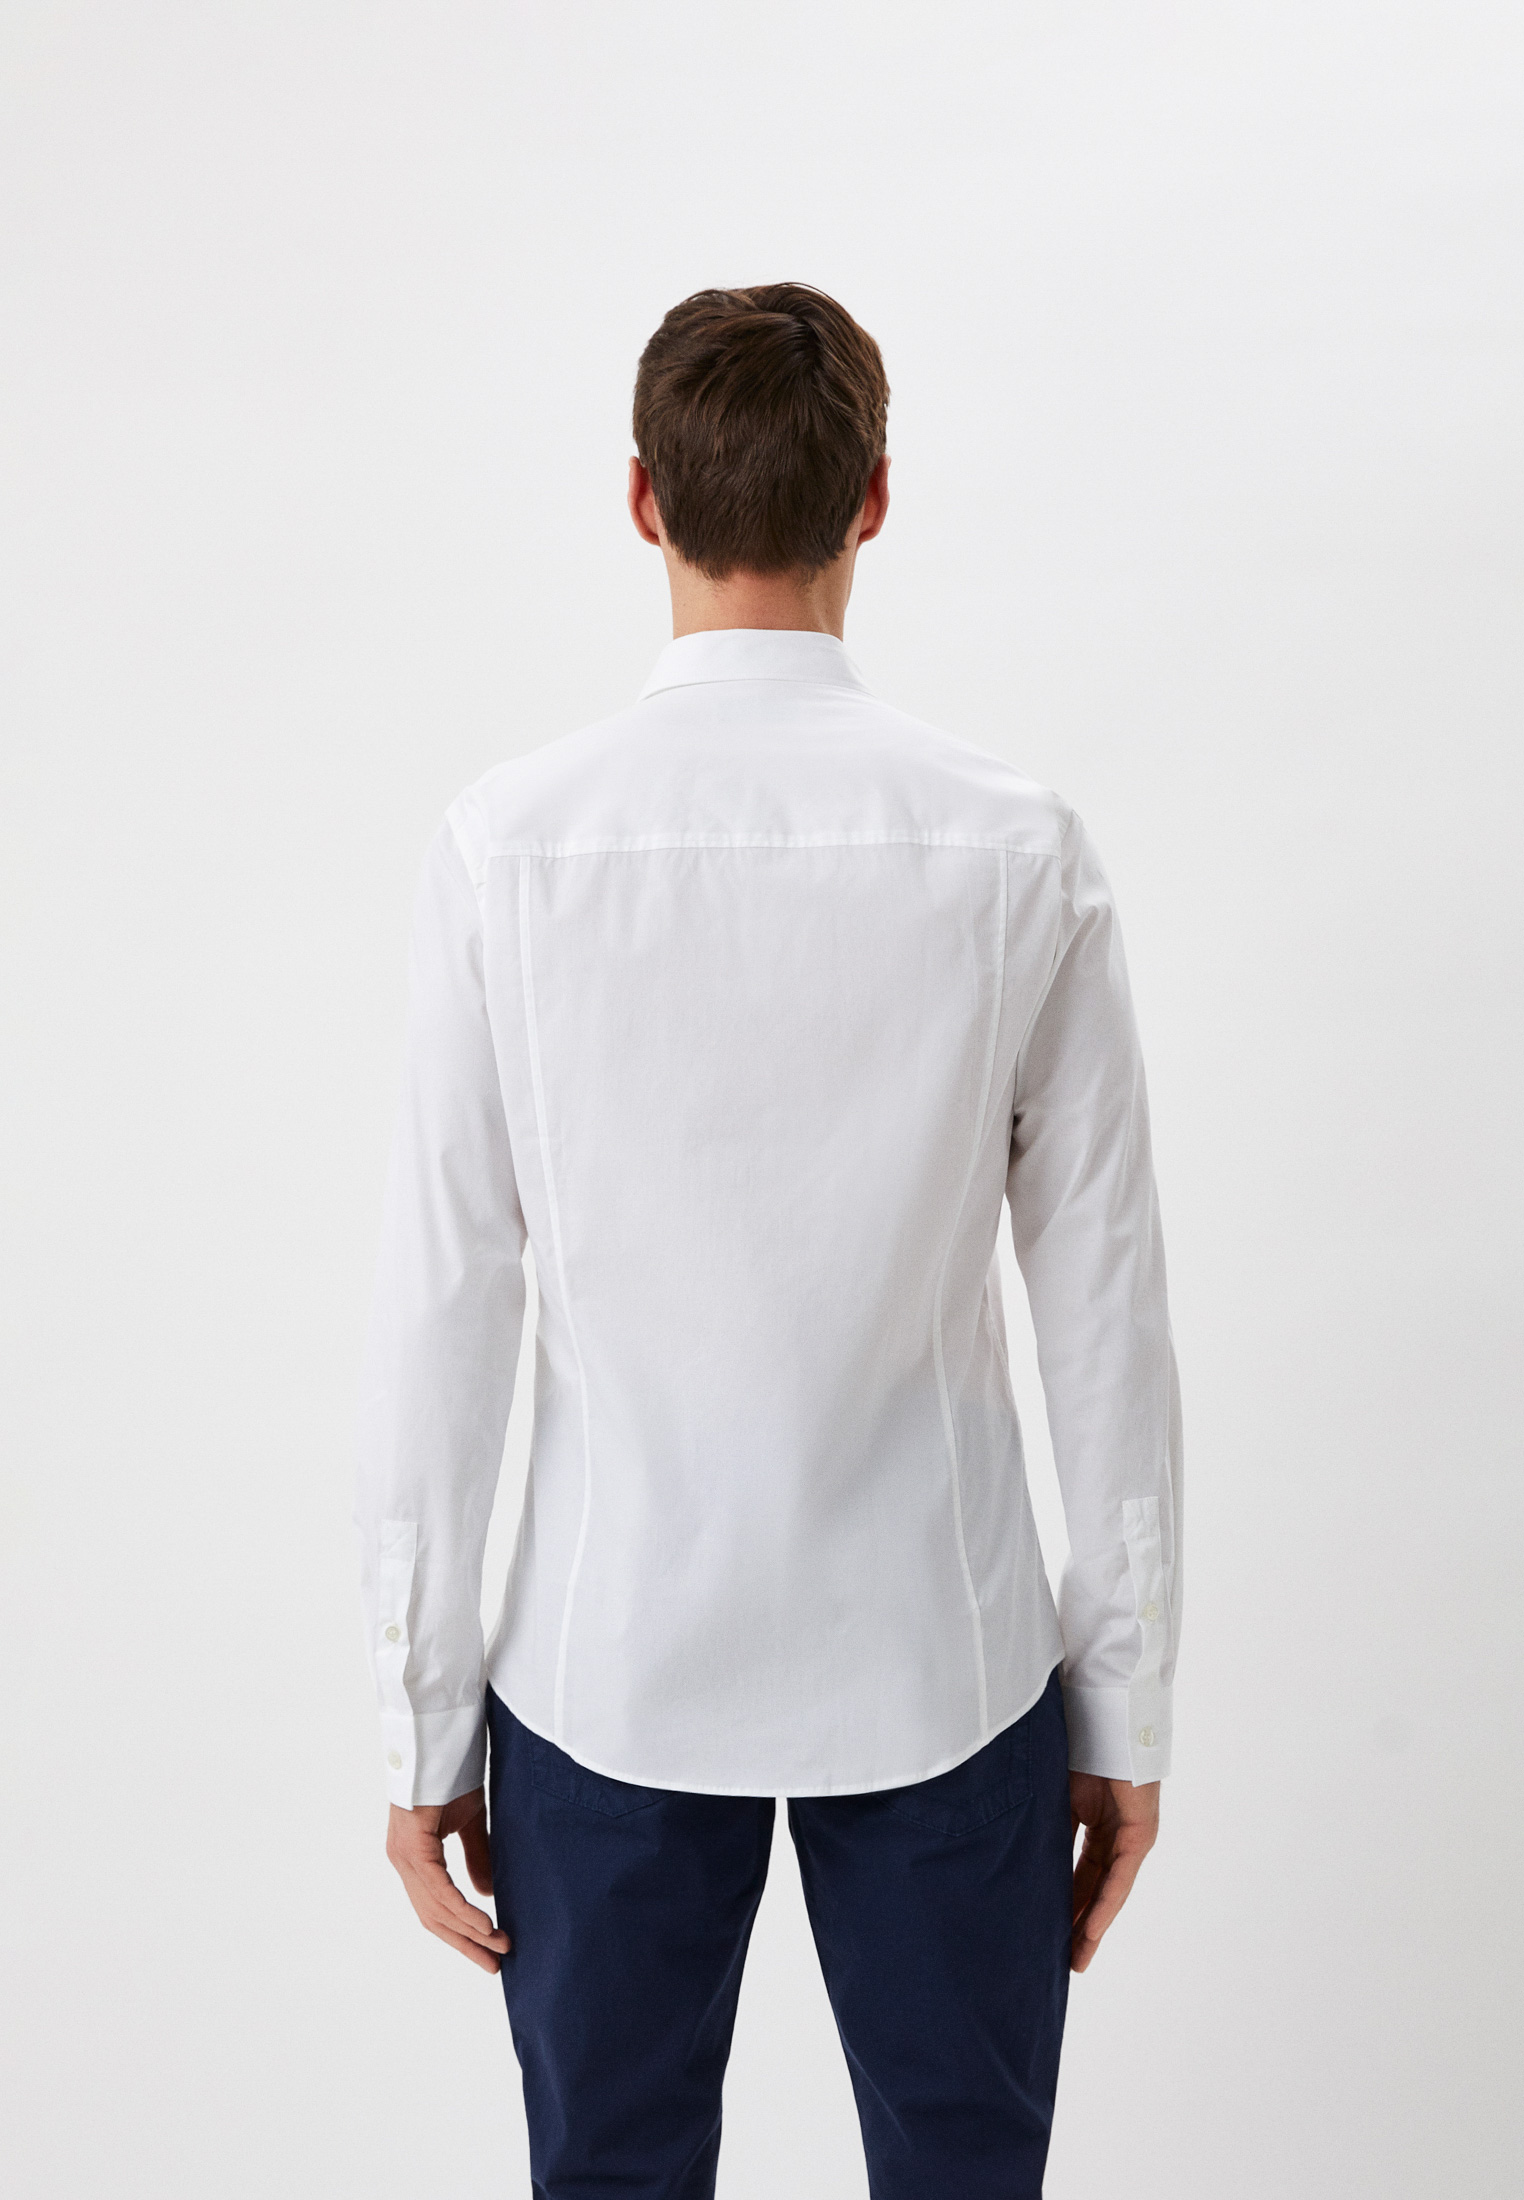 Рубашка с длинным рукавом Bikkembergs (Биккембергс) C C 073 00 S 2931: изображение 3